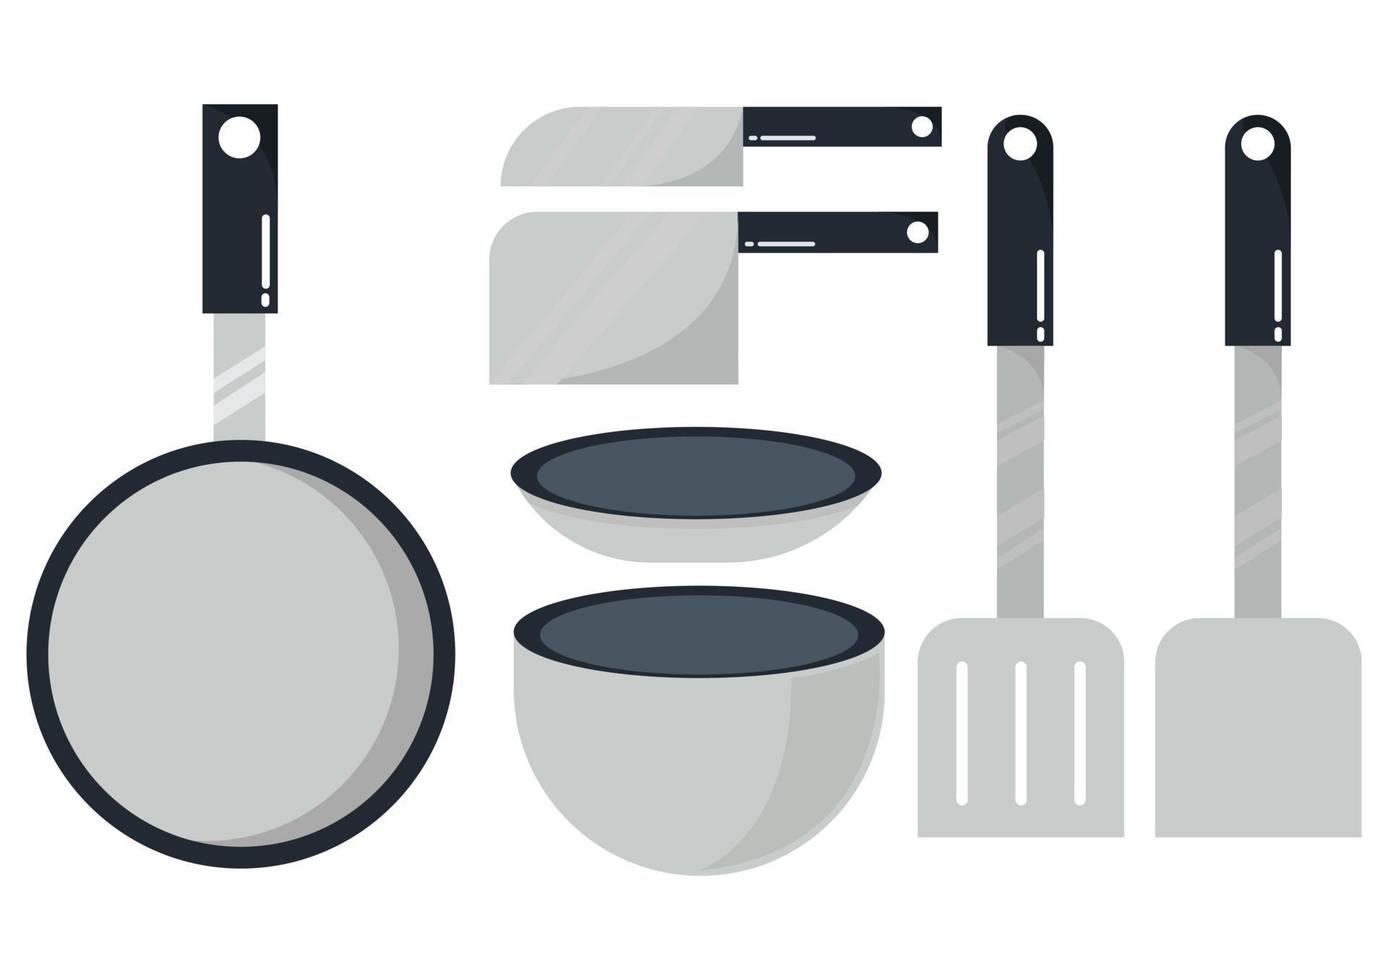 ilustração de utensílios de cozinha com um design simples e moderno vetor